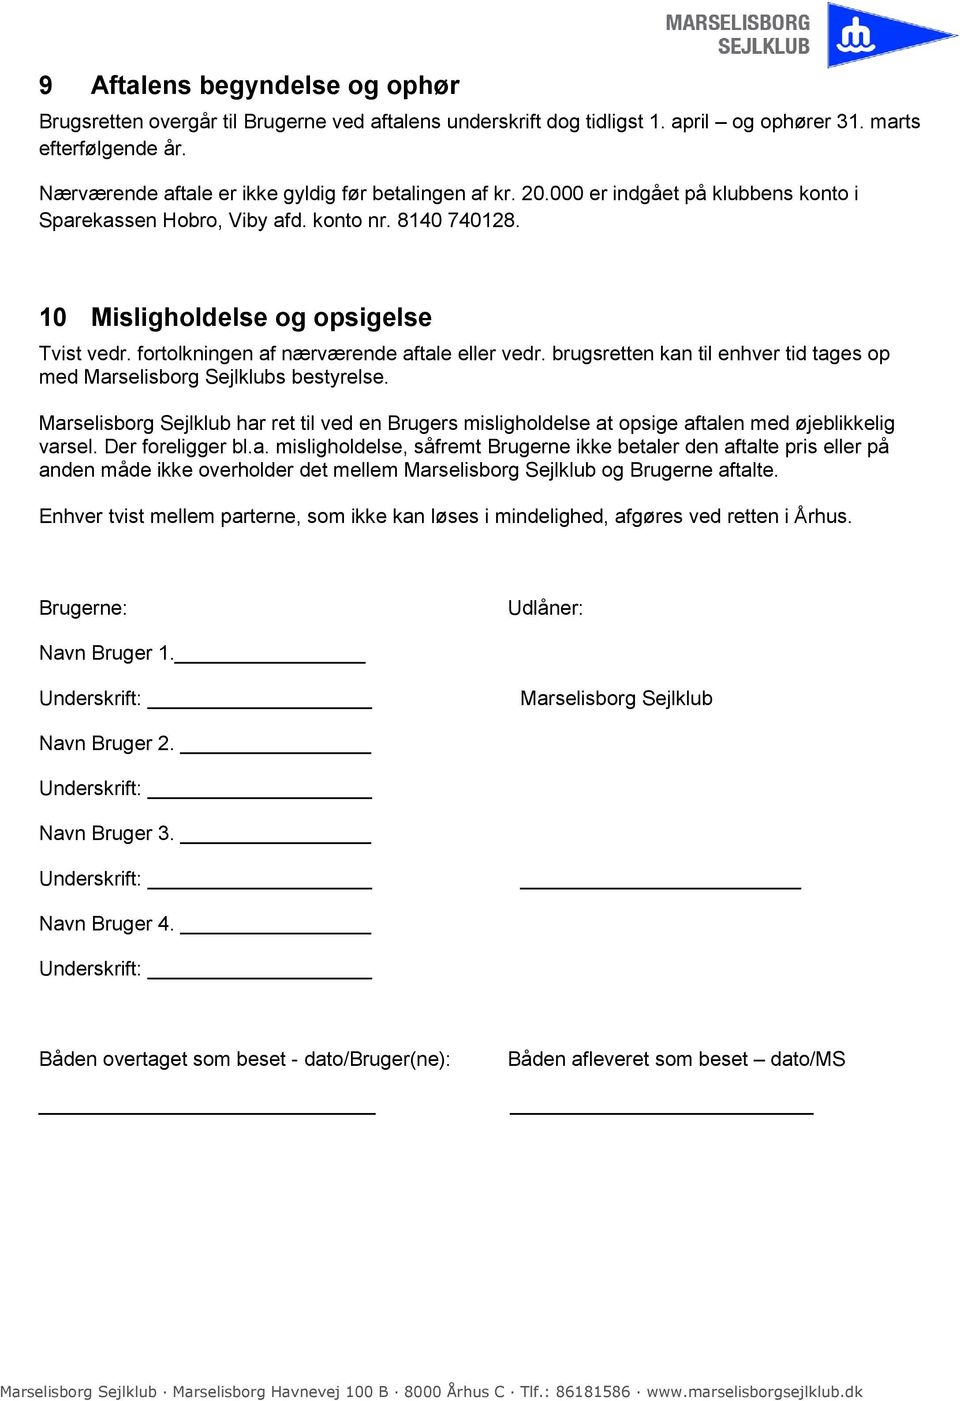 fortolkningen af nærværende aftale eller vedr. brugsretten kan til enhver tid tages op med Marselisborg Sejlklubs bestyrelse.